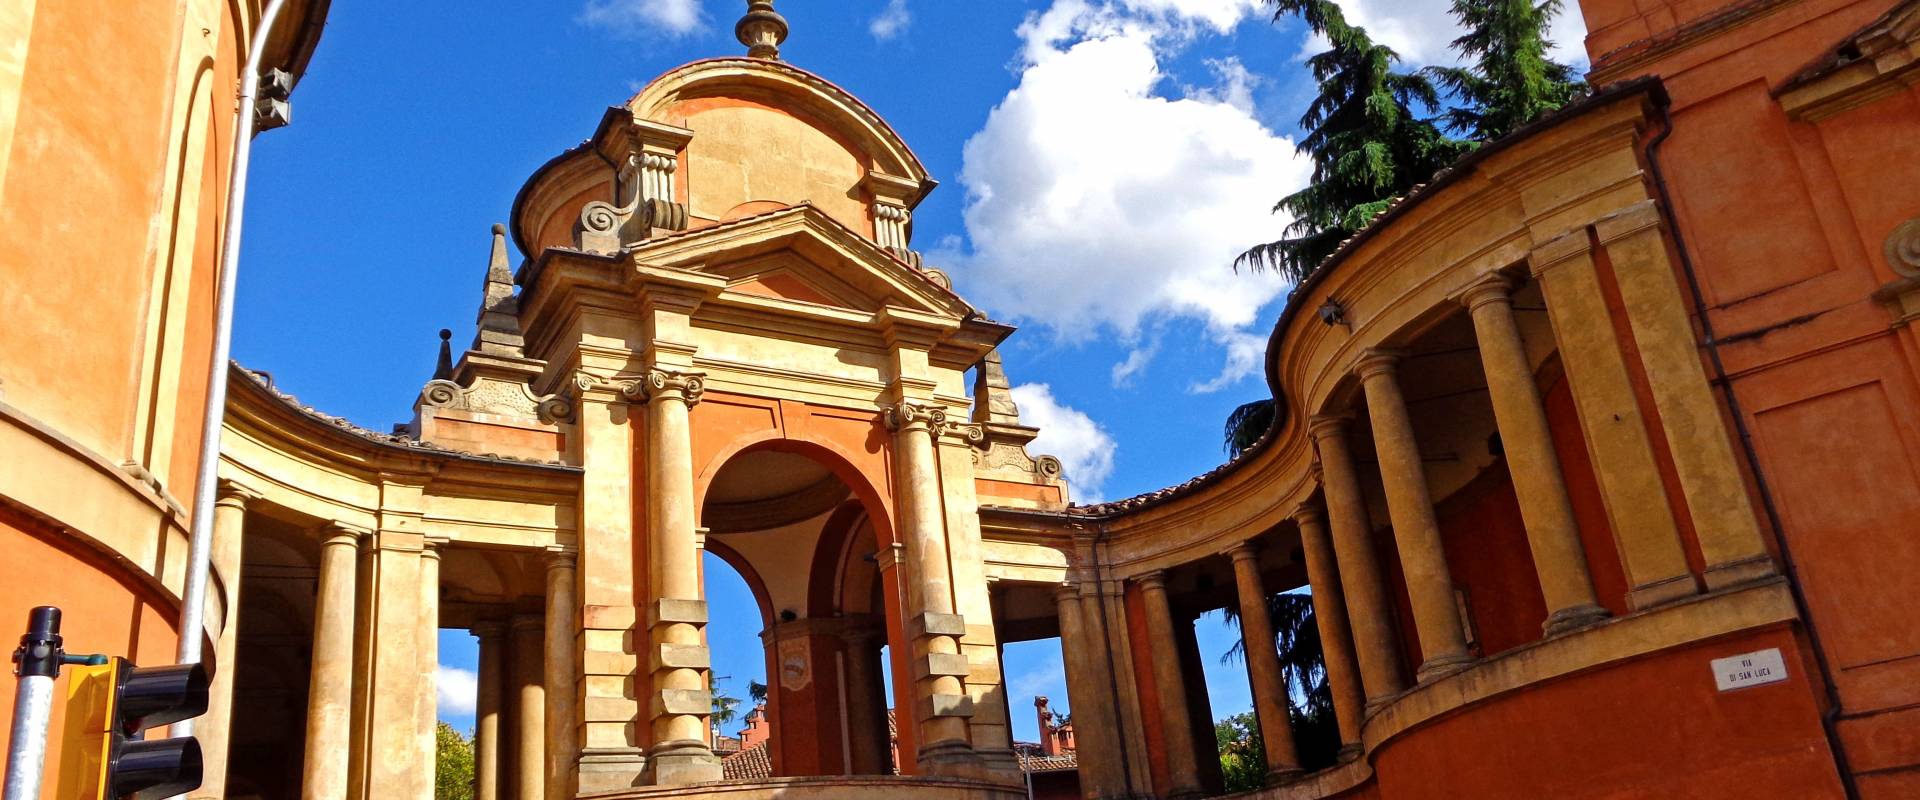 Portico di San Luca e Meloncello - Bologna - 17-9-17(19) foto di EvelinaRibarova